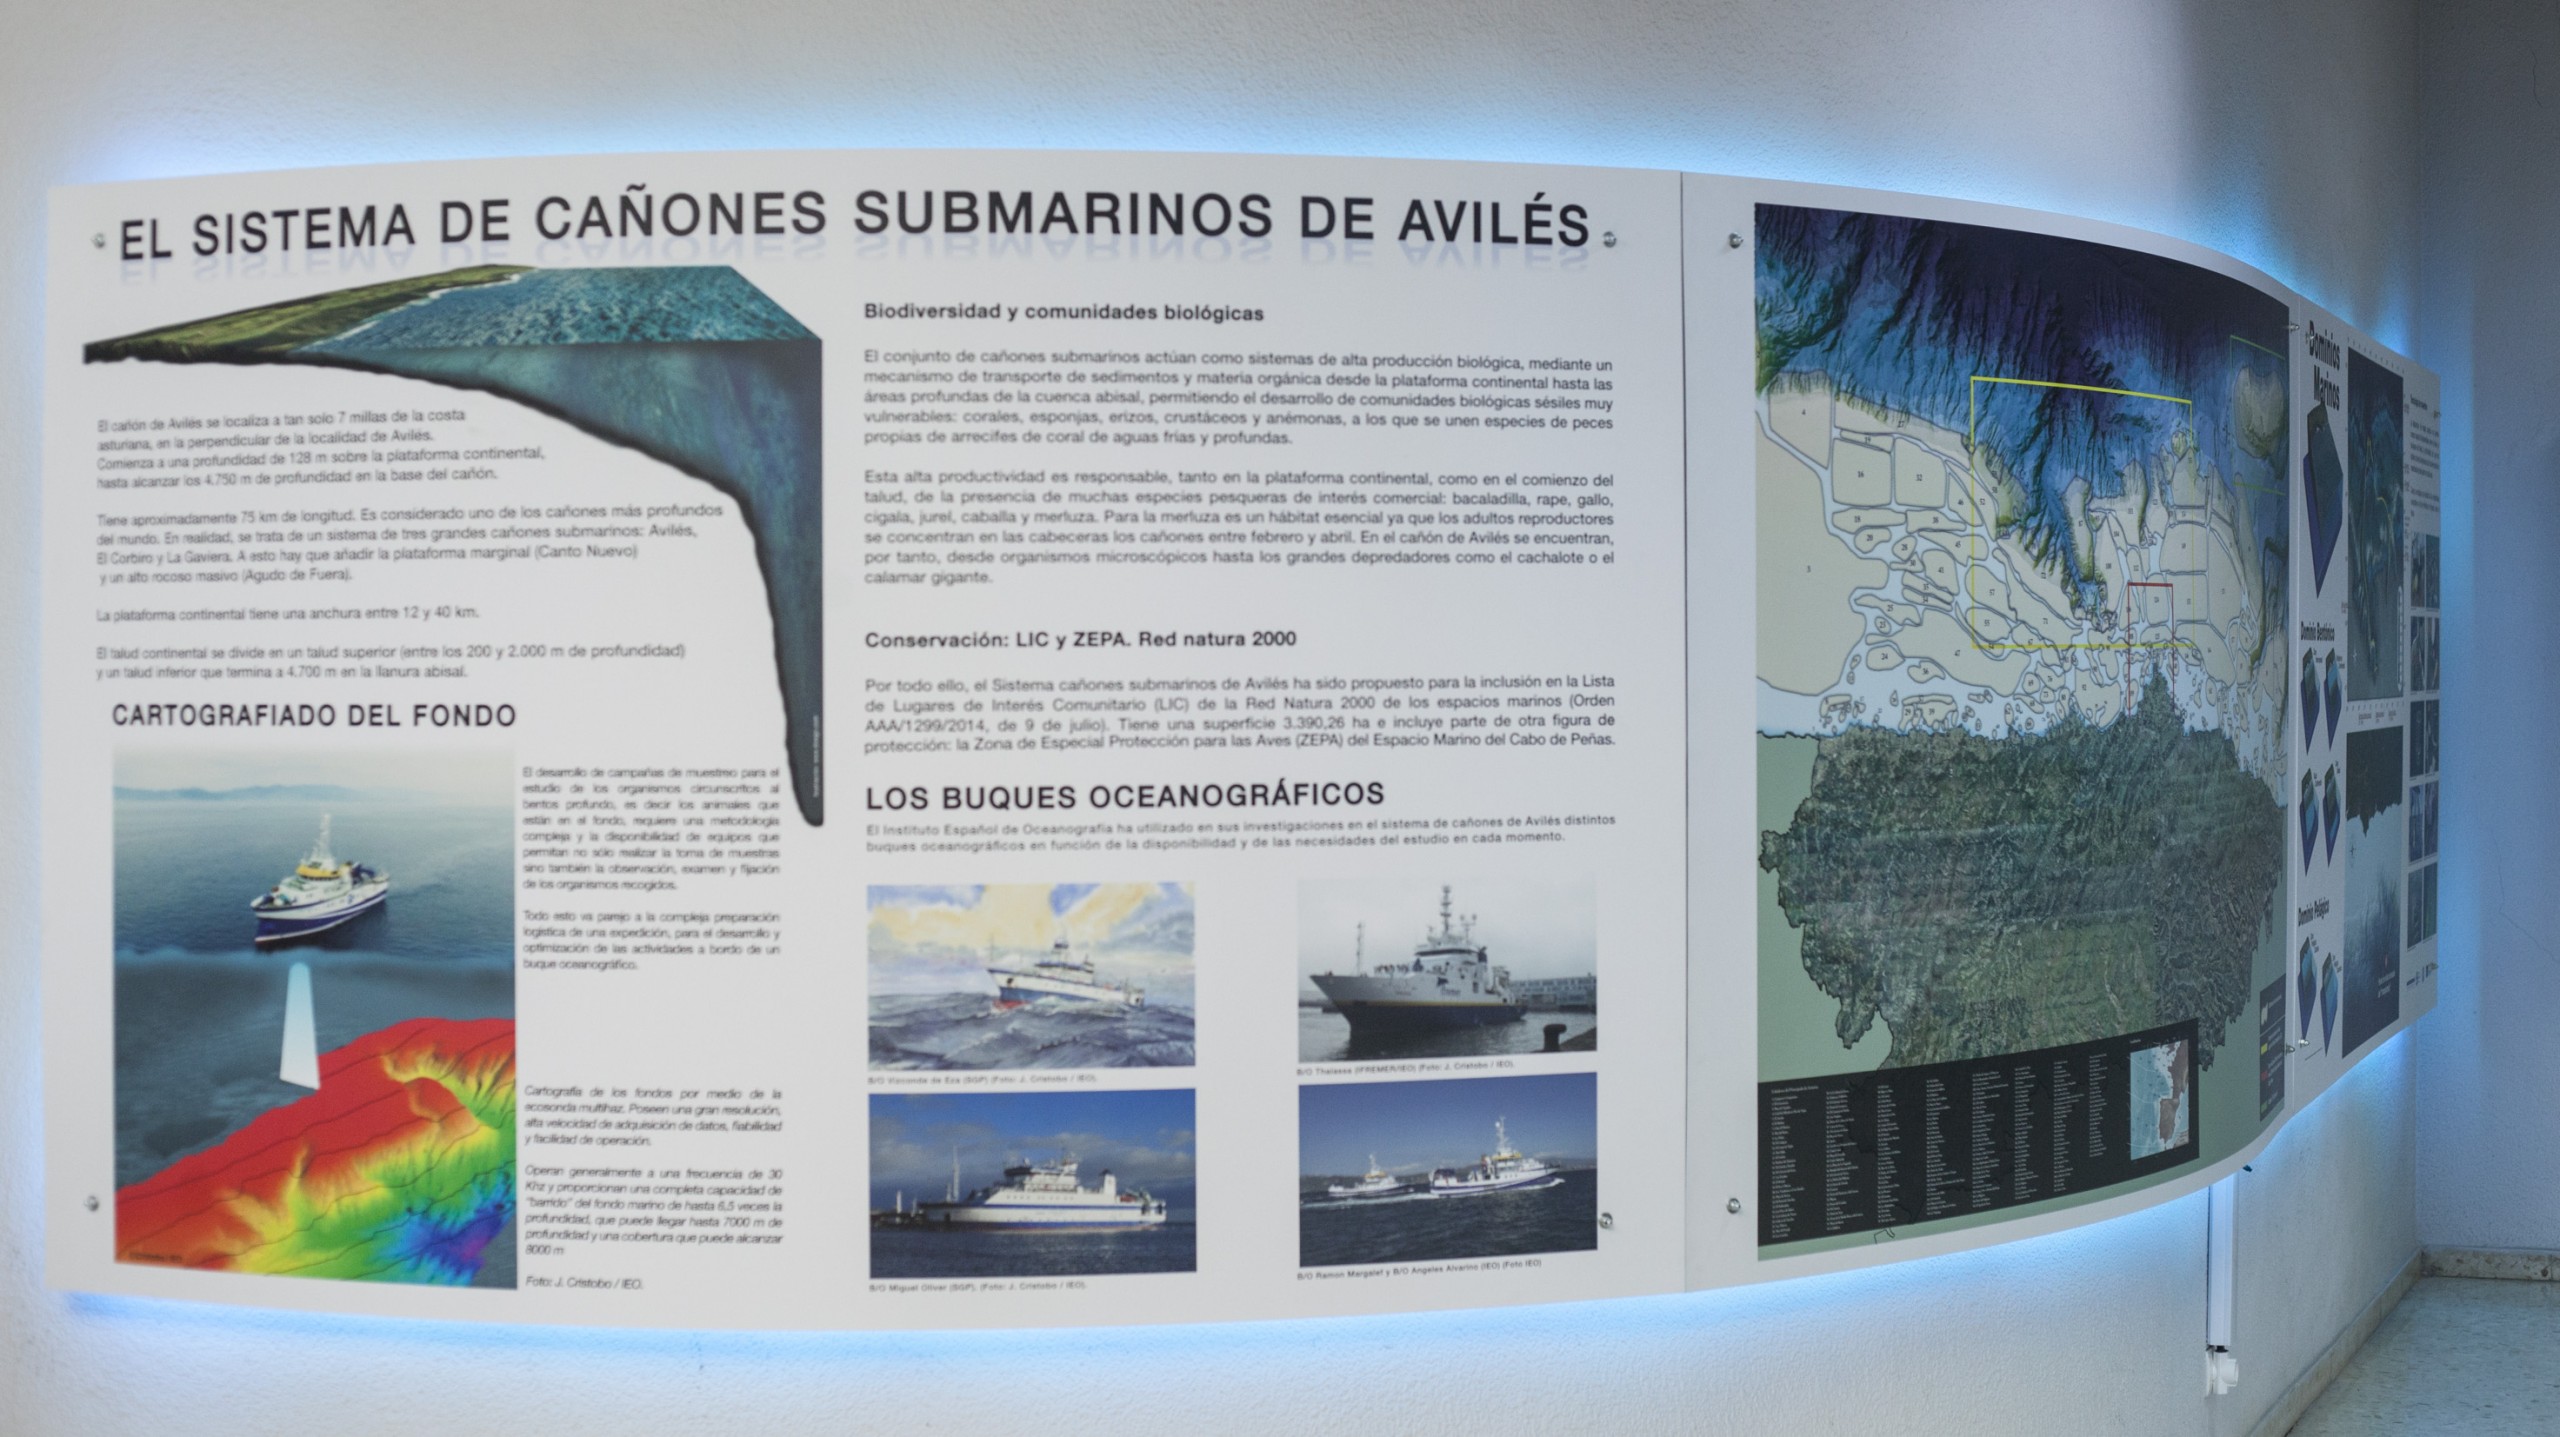 Dirección General de Pesca del Principado de Asturias. Exposición, diseño gráfico, trampantojo y producción sobre el Cañón de Avilés 2016.